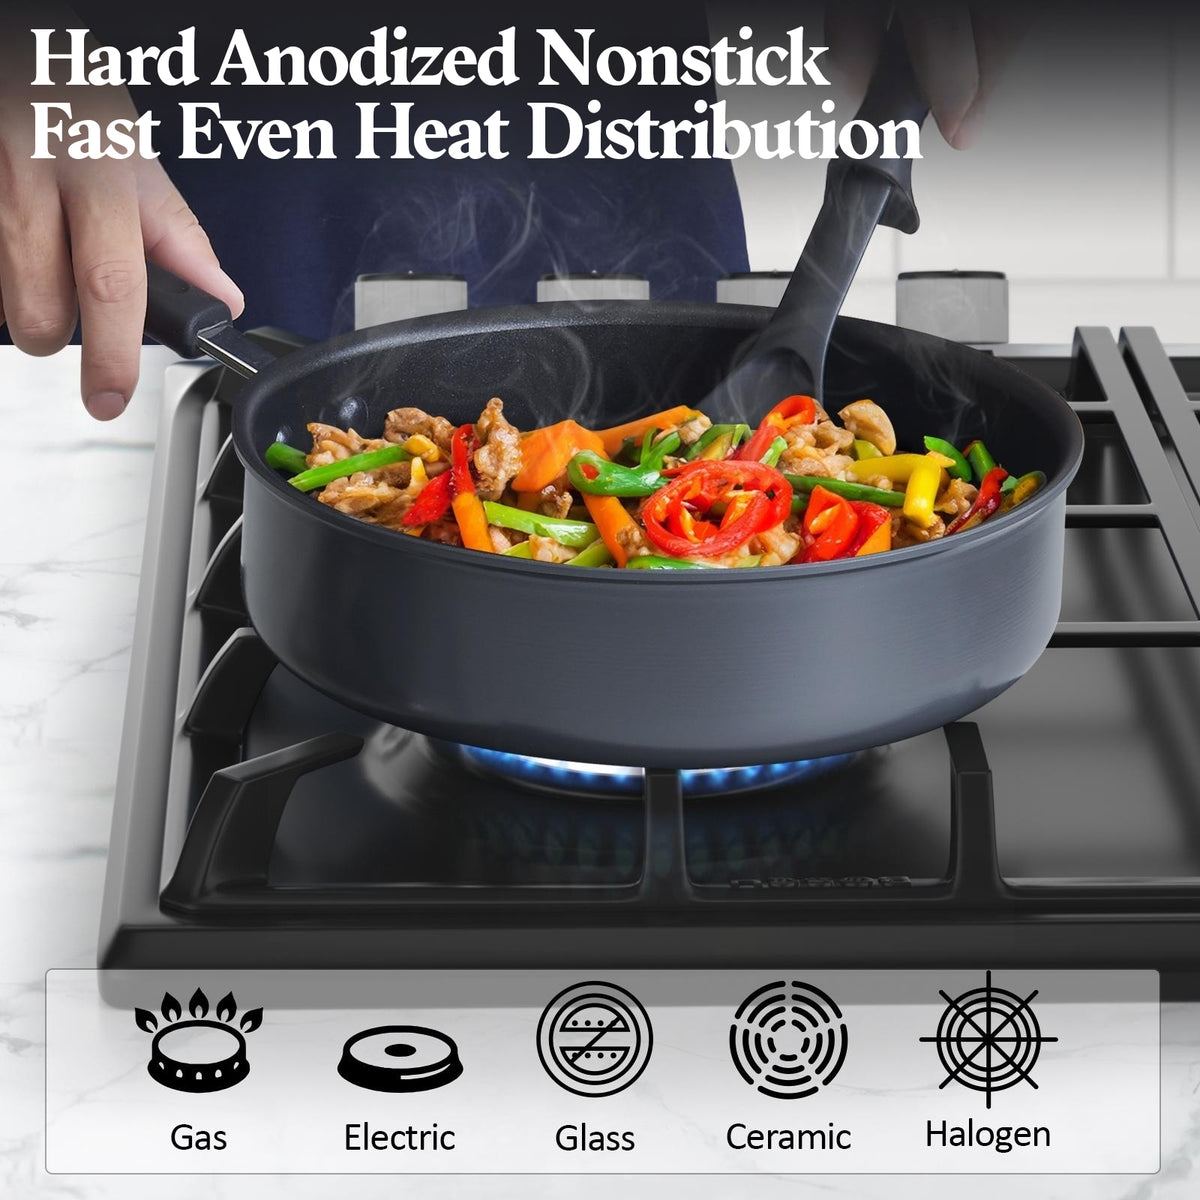 Cook N Home 8 Piece Nonstick Heavy Gauge Cookware Set, Black